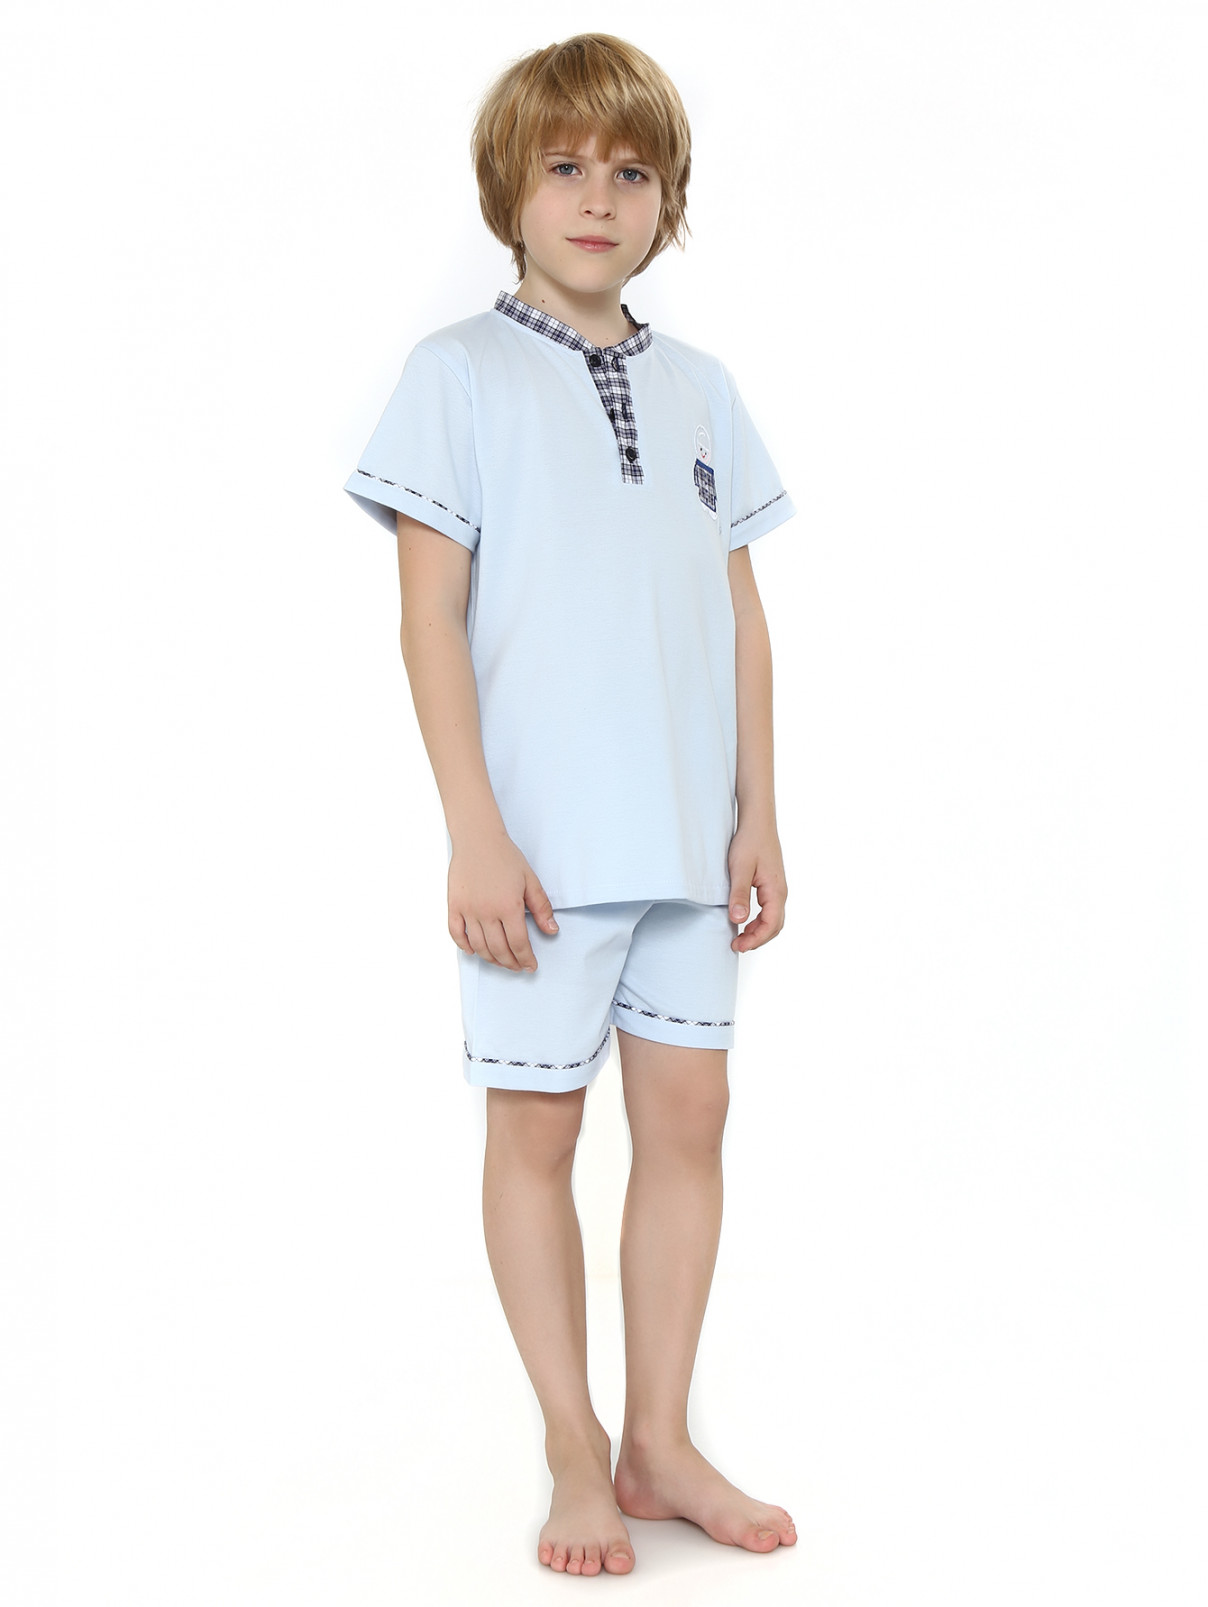 Пижама из хлопка с контрастной отделкой и аппликацией Giottino  –  Модель Общий вид  – Цвет:  Синий